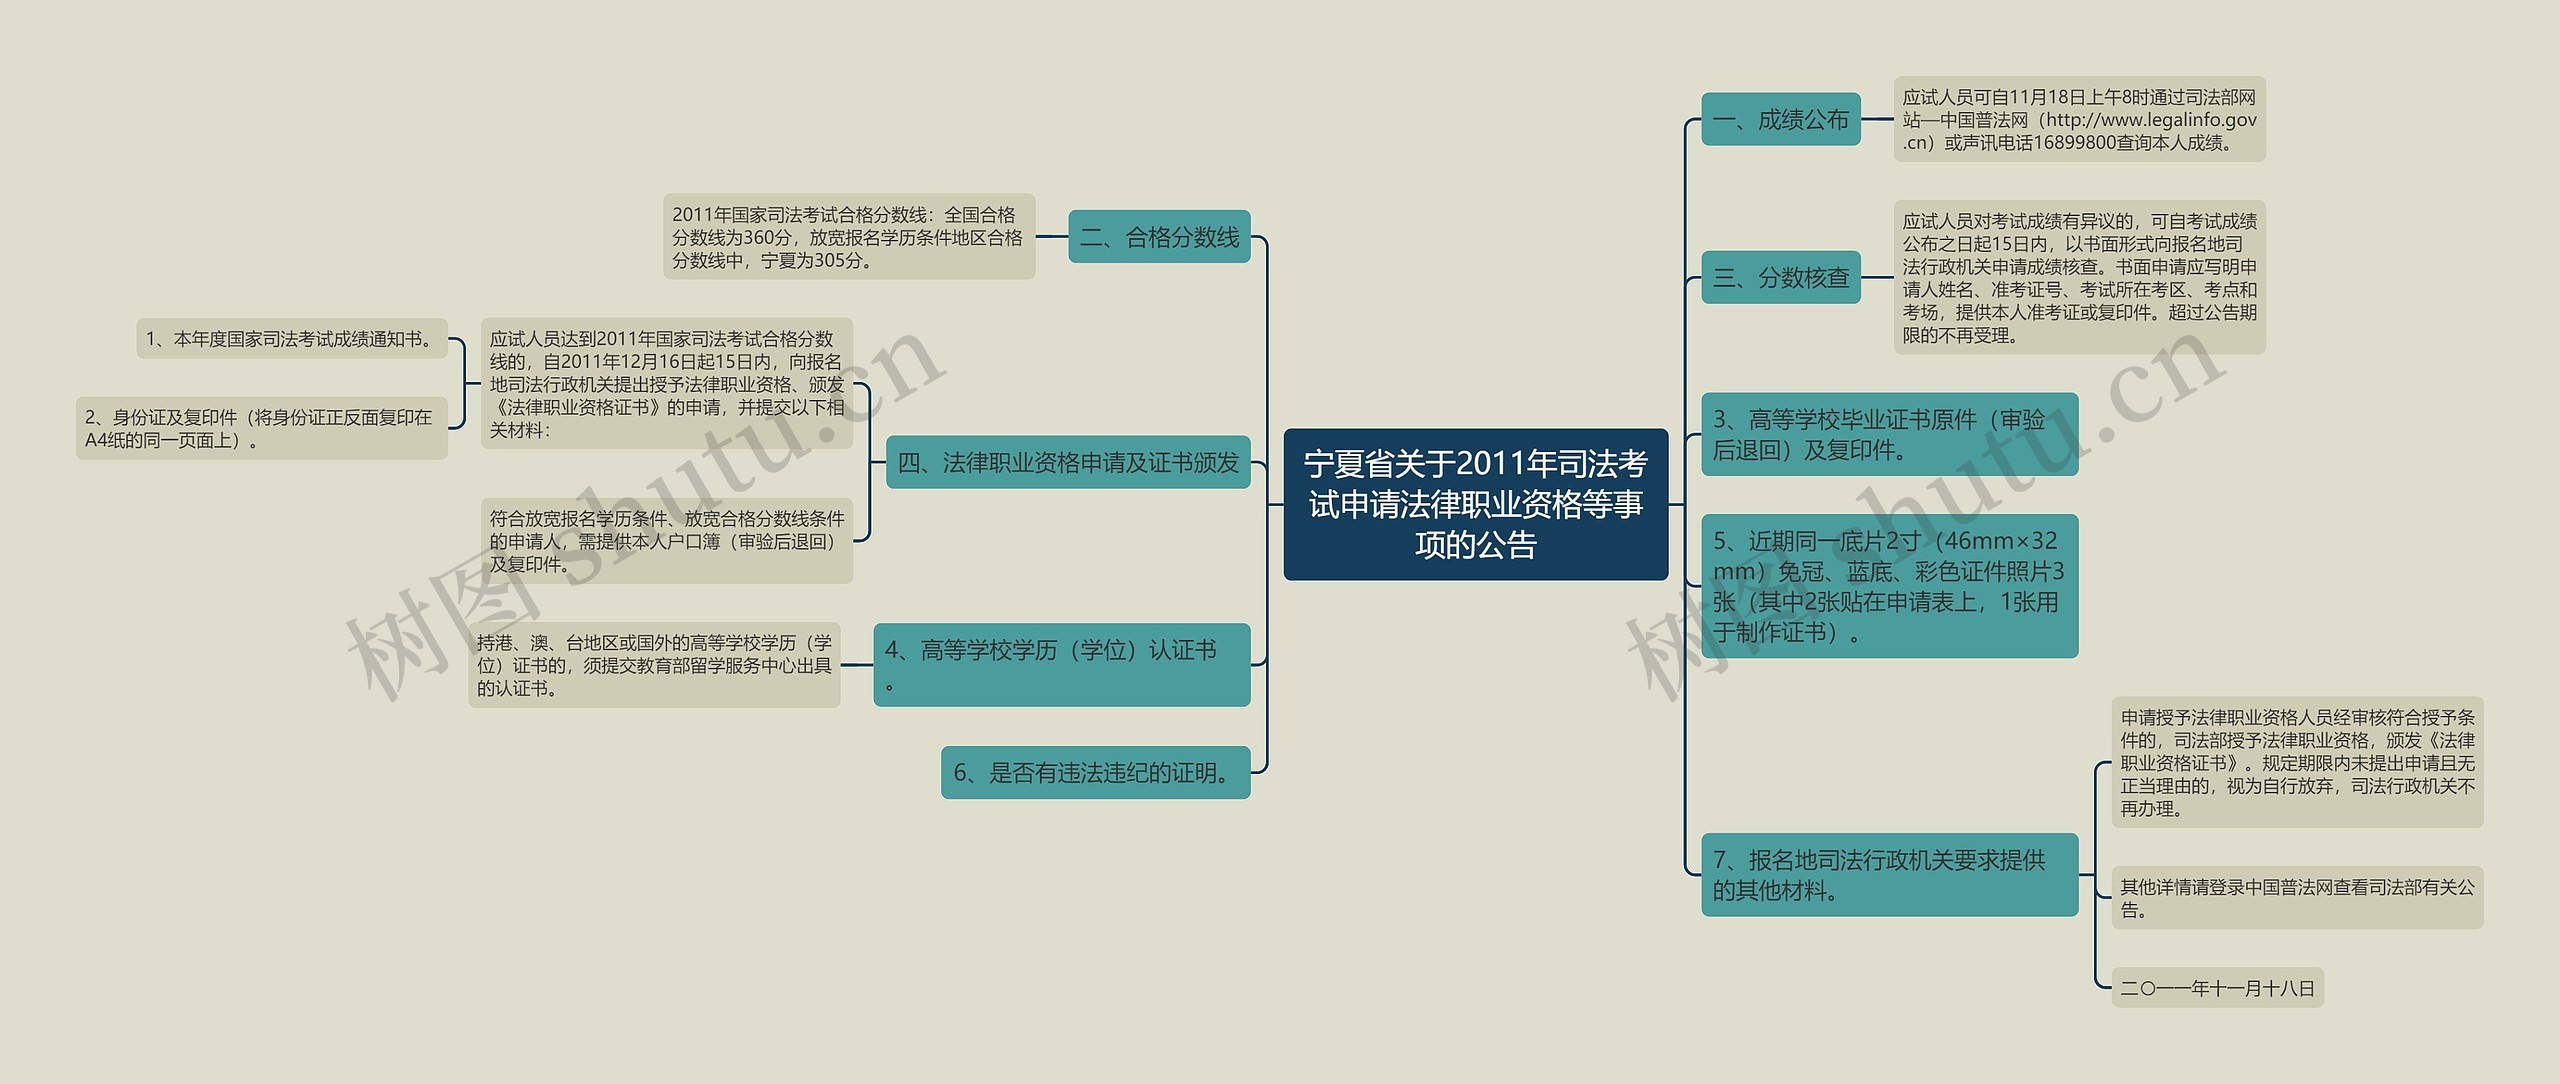 宁夏省关于2011年司法考试申请法律职业资格等事项的公告思维导图